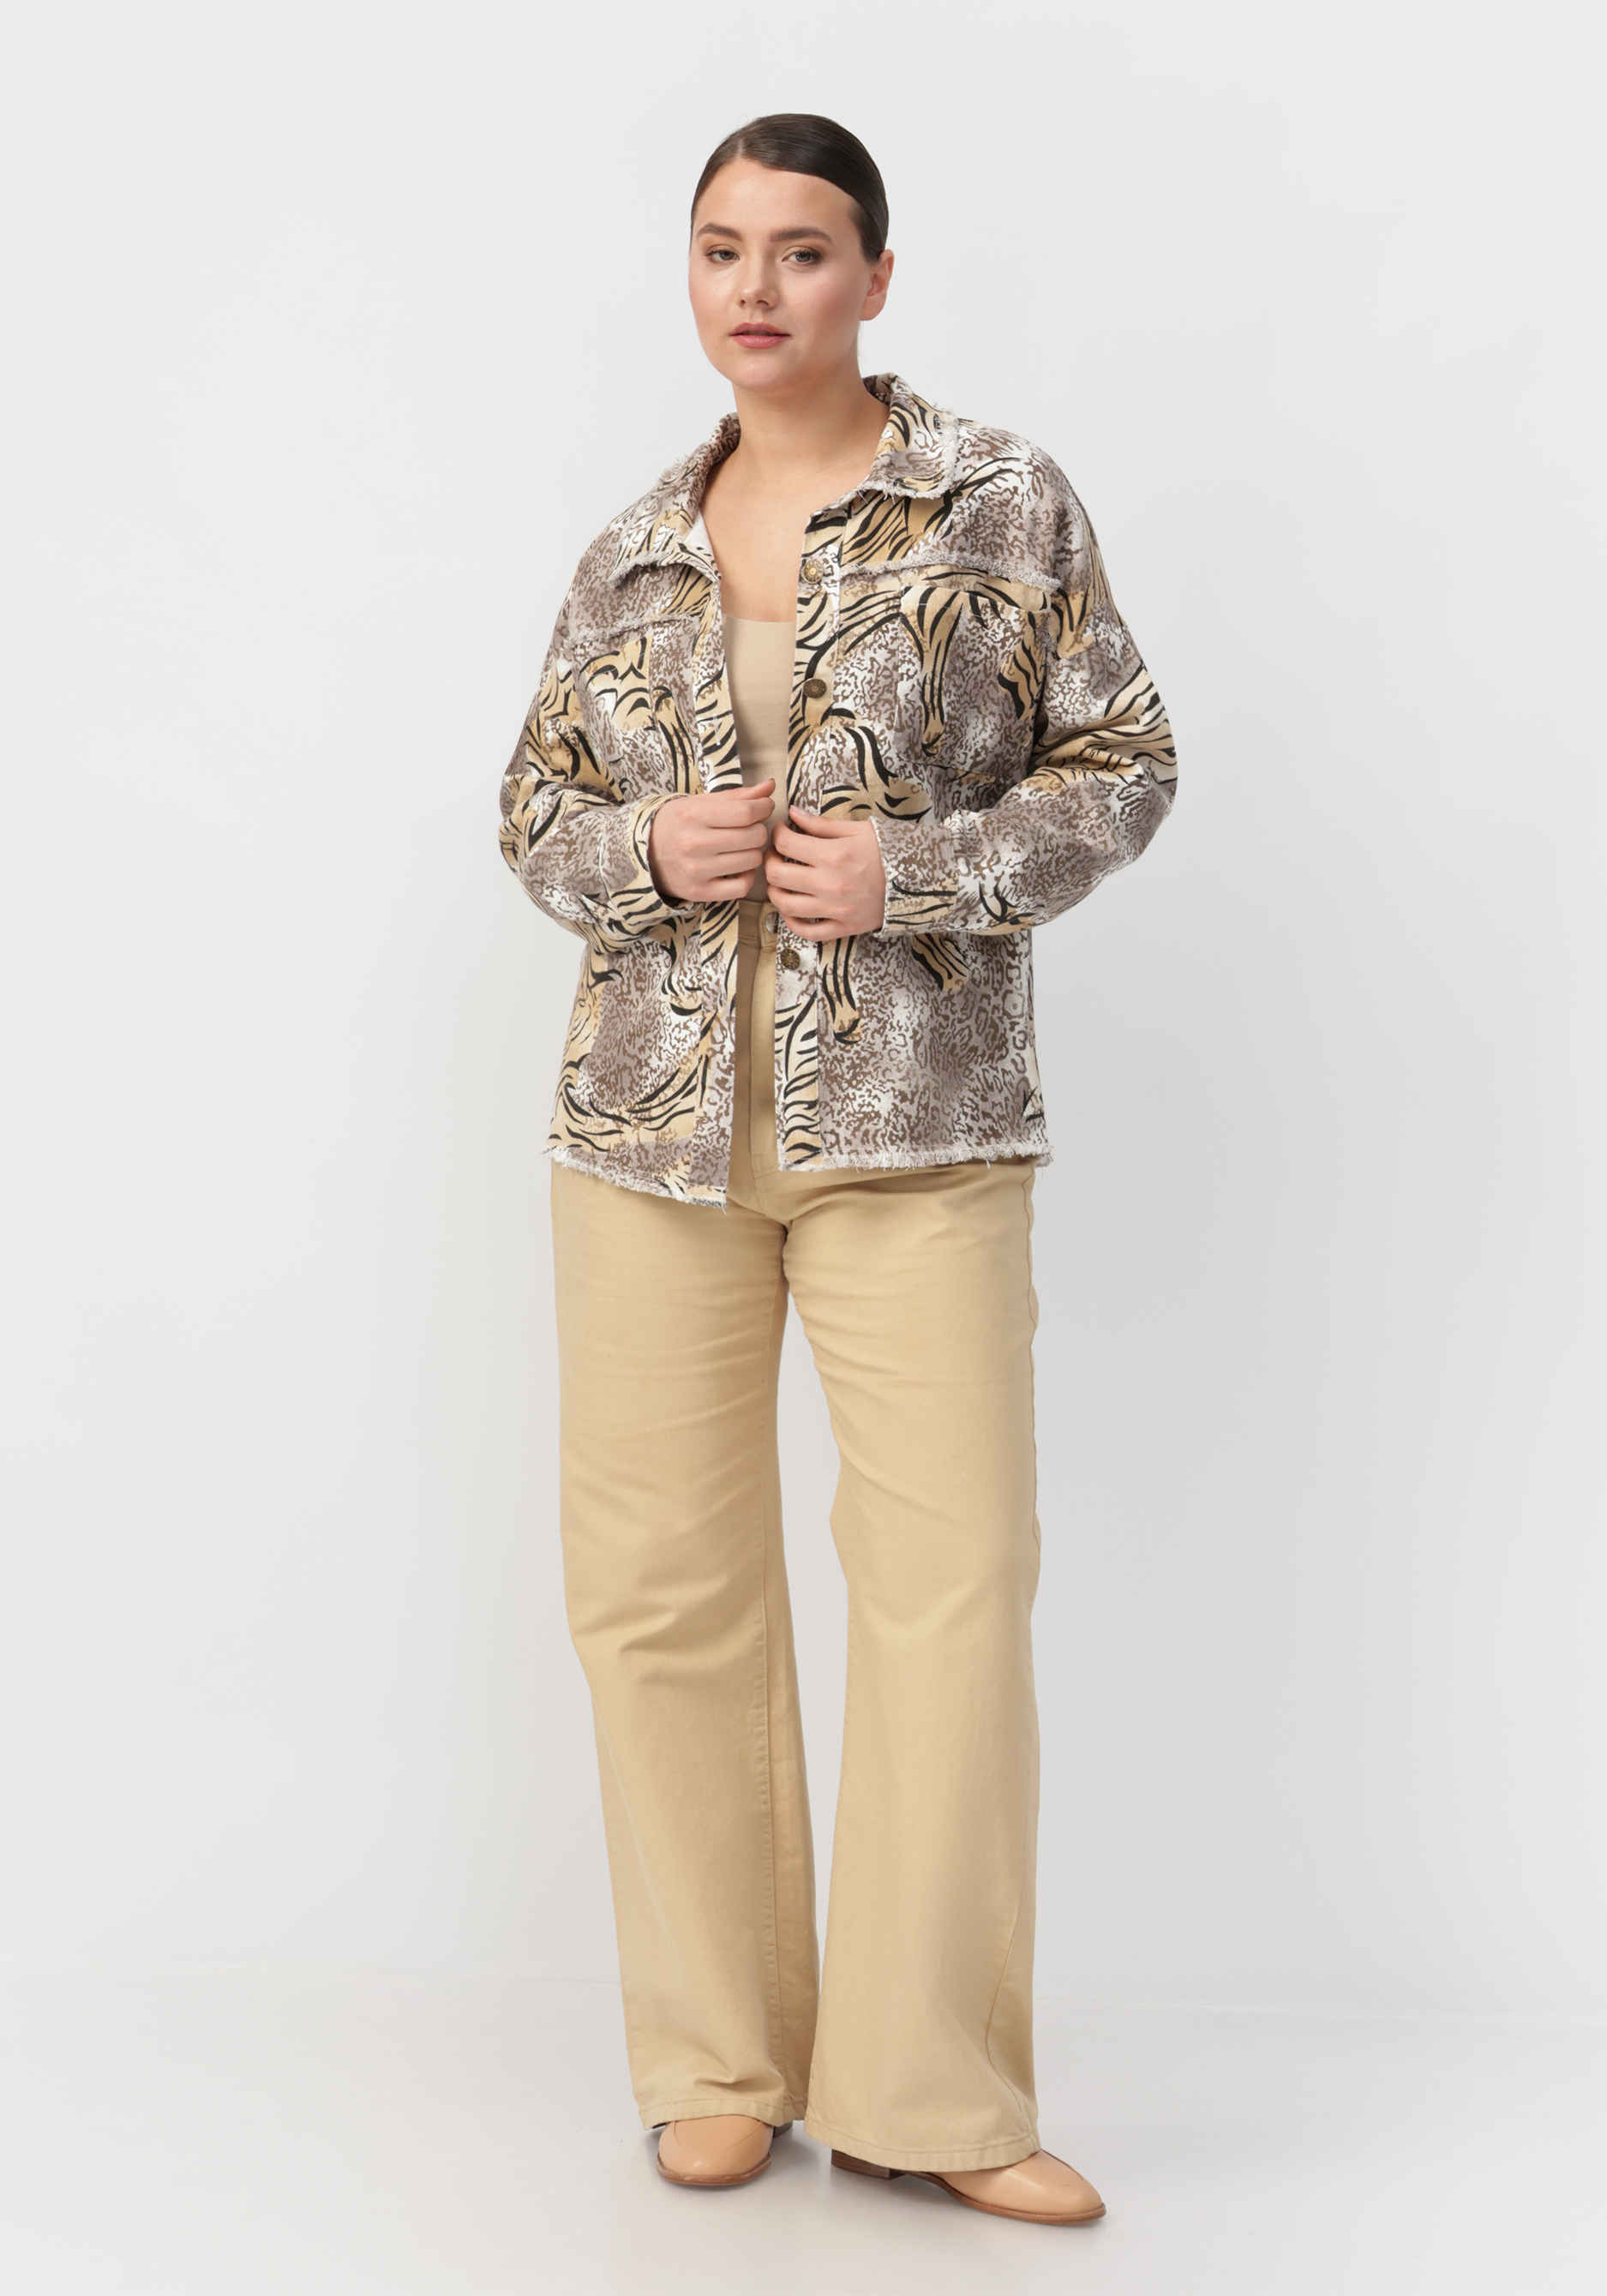 Джинсовая куртка "Глория" Edsel Krause, размер 56, цвет коричневый - фото 7